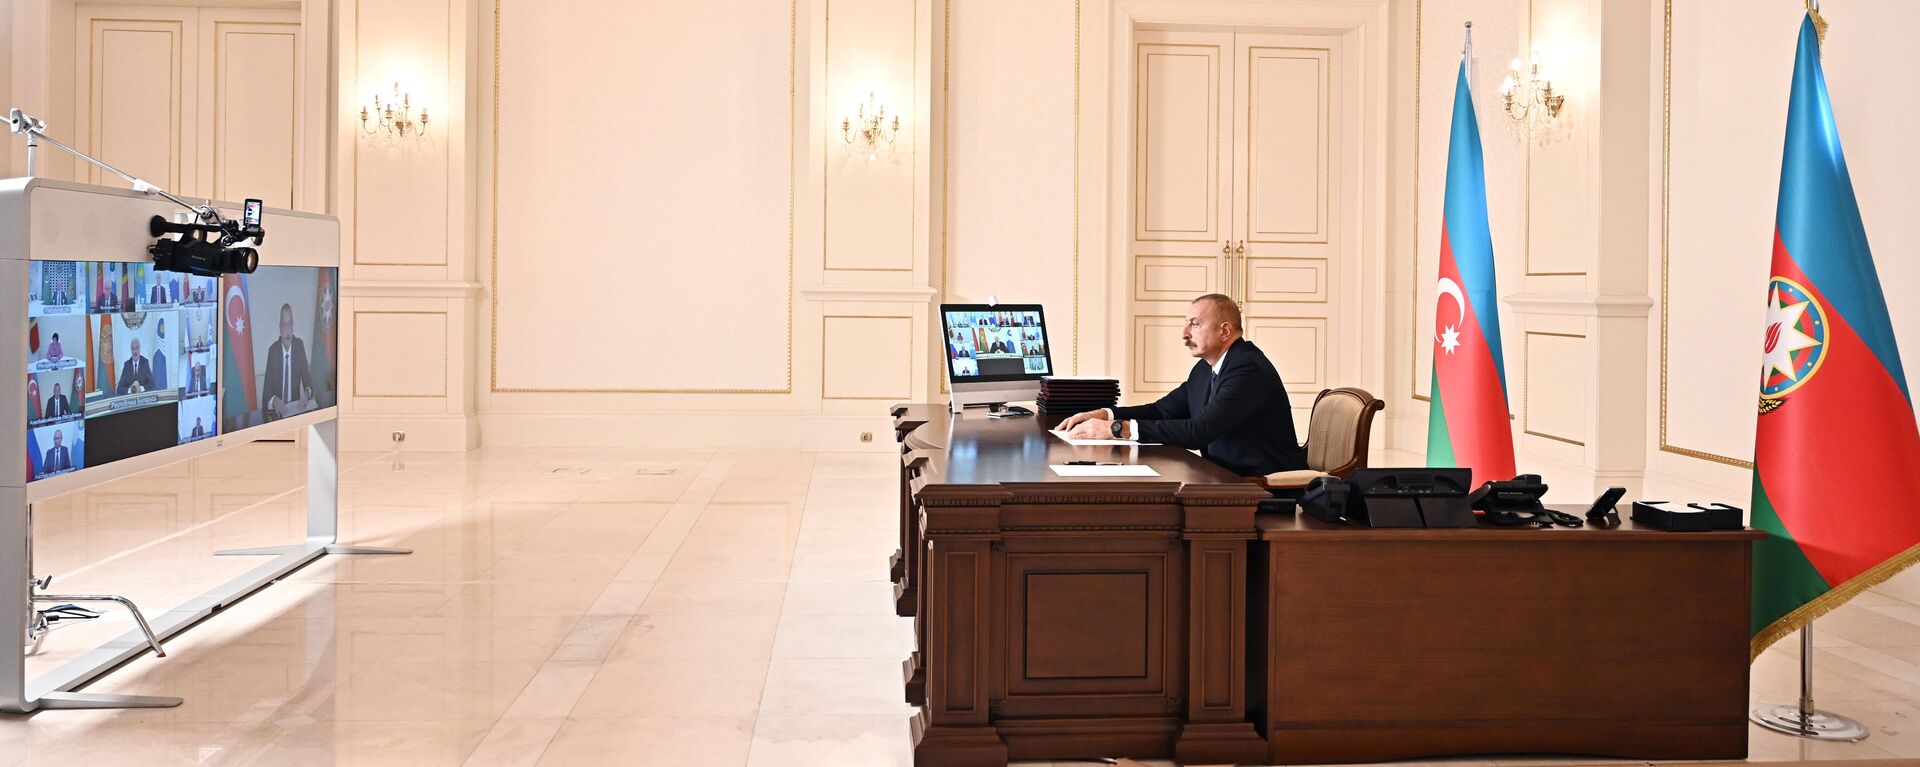 Президент Ильхам Алиев во время выступления на заседании Совета глав государств СНГ - Sputnik Азербайджан, 1920, 15.10.2021